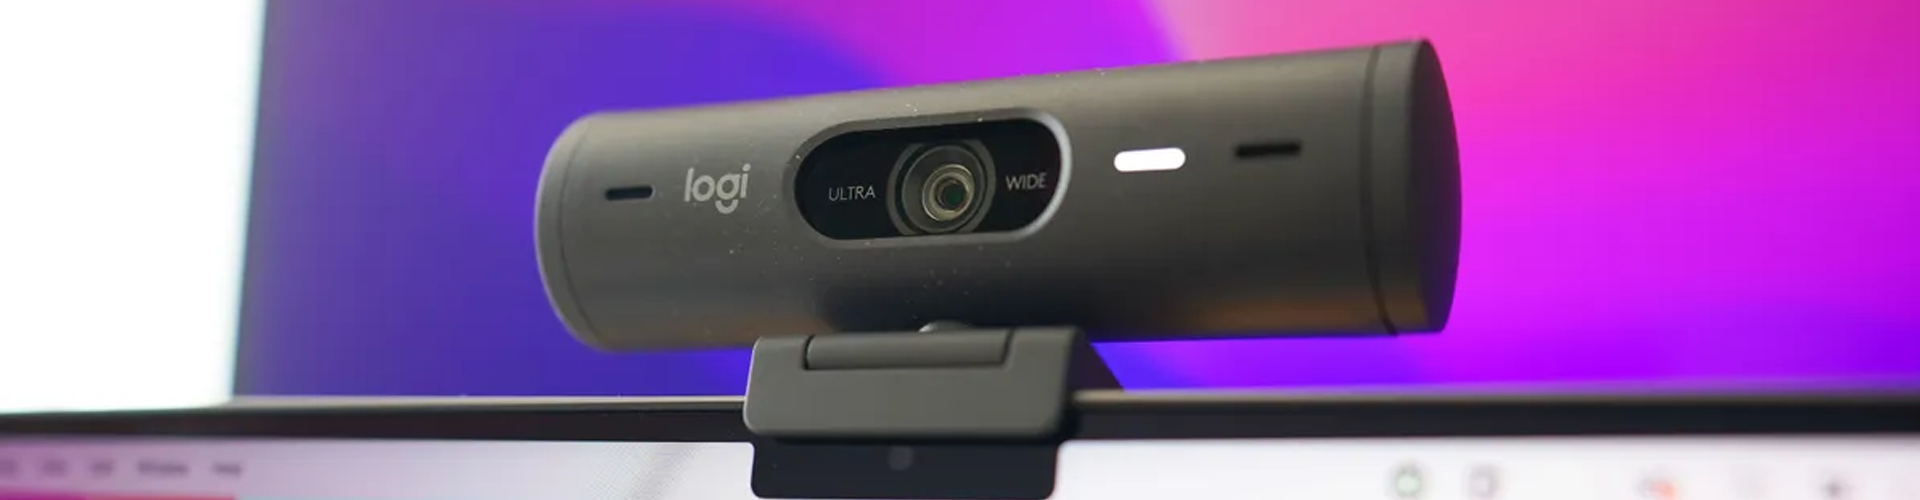 Khắc phục sự cố và thiết lập Webcam hội nghị Logitech BRIO